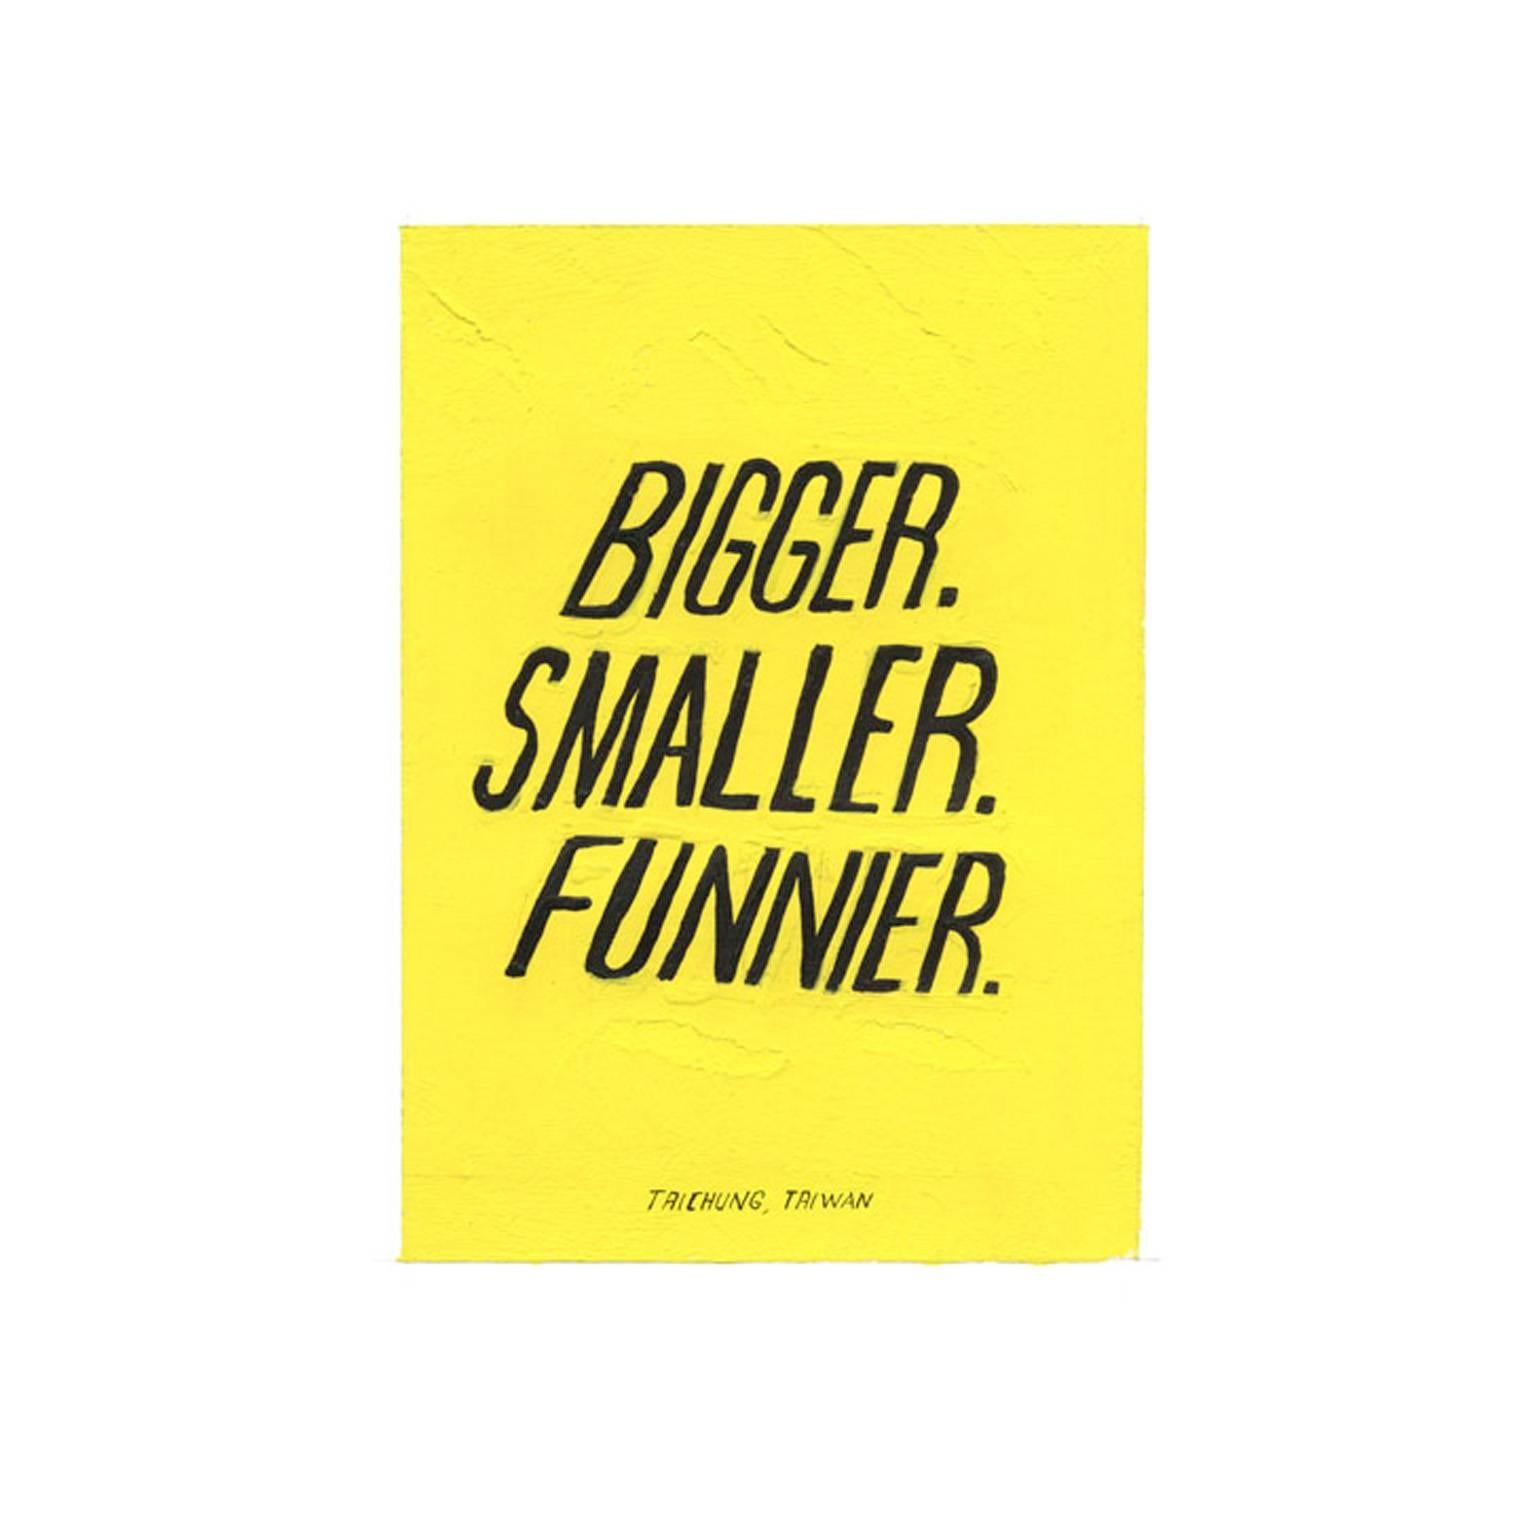 Bigger. Smaller. Funnier - Painting by Scott Patt